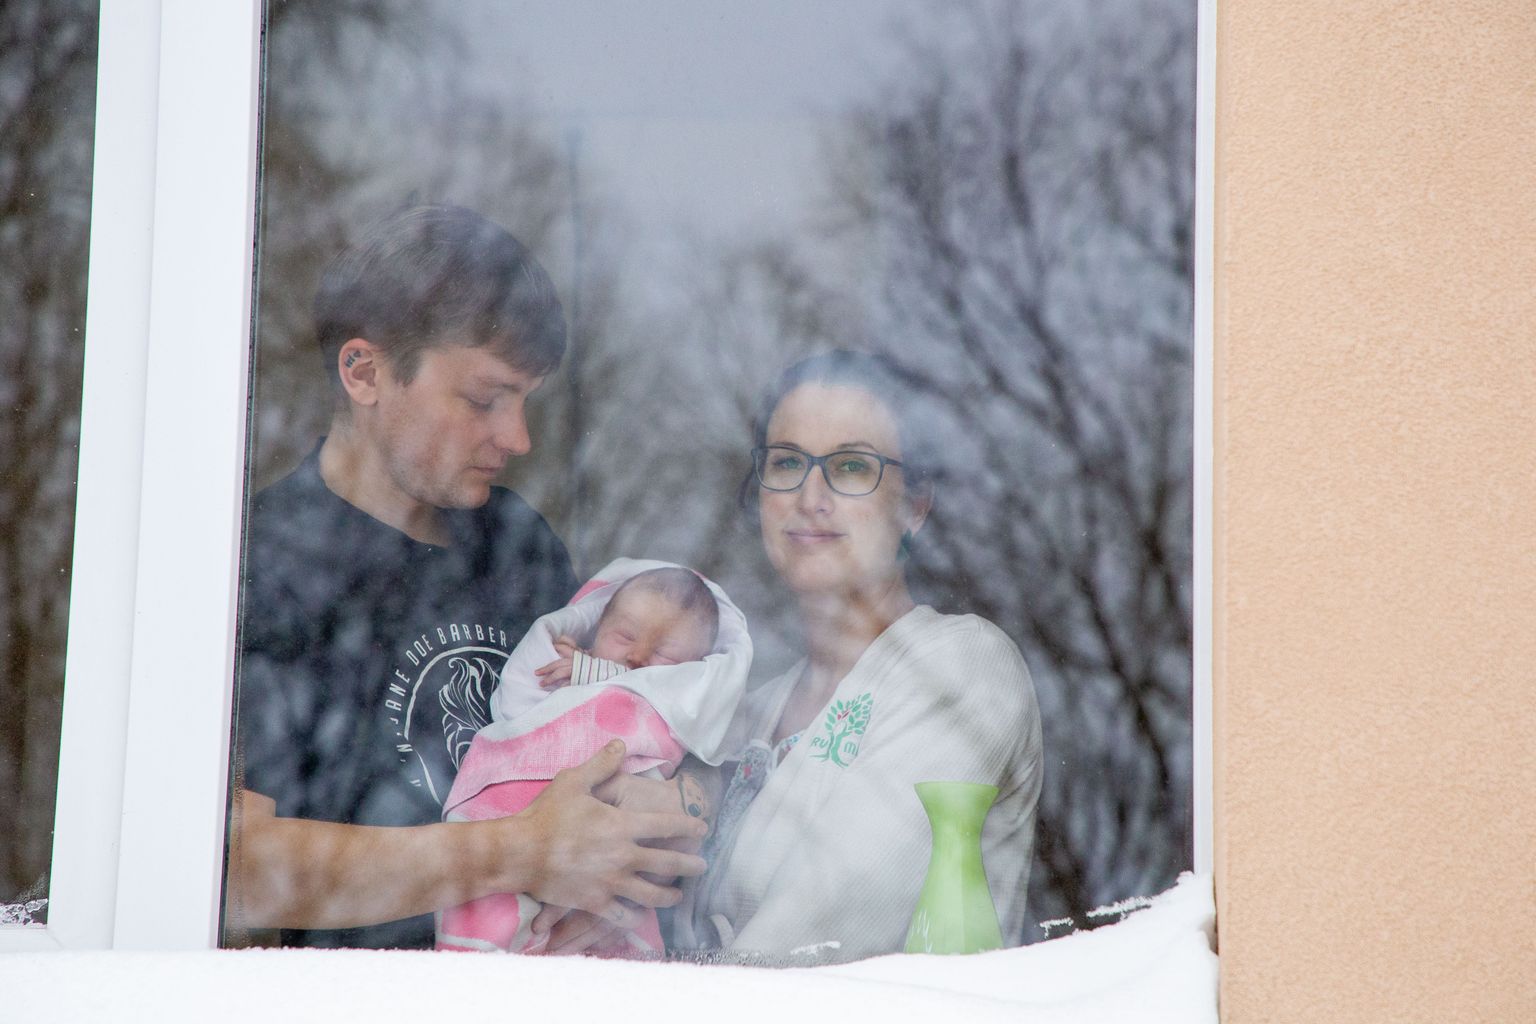 Lõuna-Eesti haiglale soeatav kardiotokograaf on nüüdisaegseim ja täiuslikem ema ja lapse seisundit adekvaatselt kirjeldav aparaat. Foto on illustratiivne.